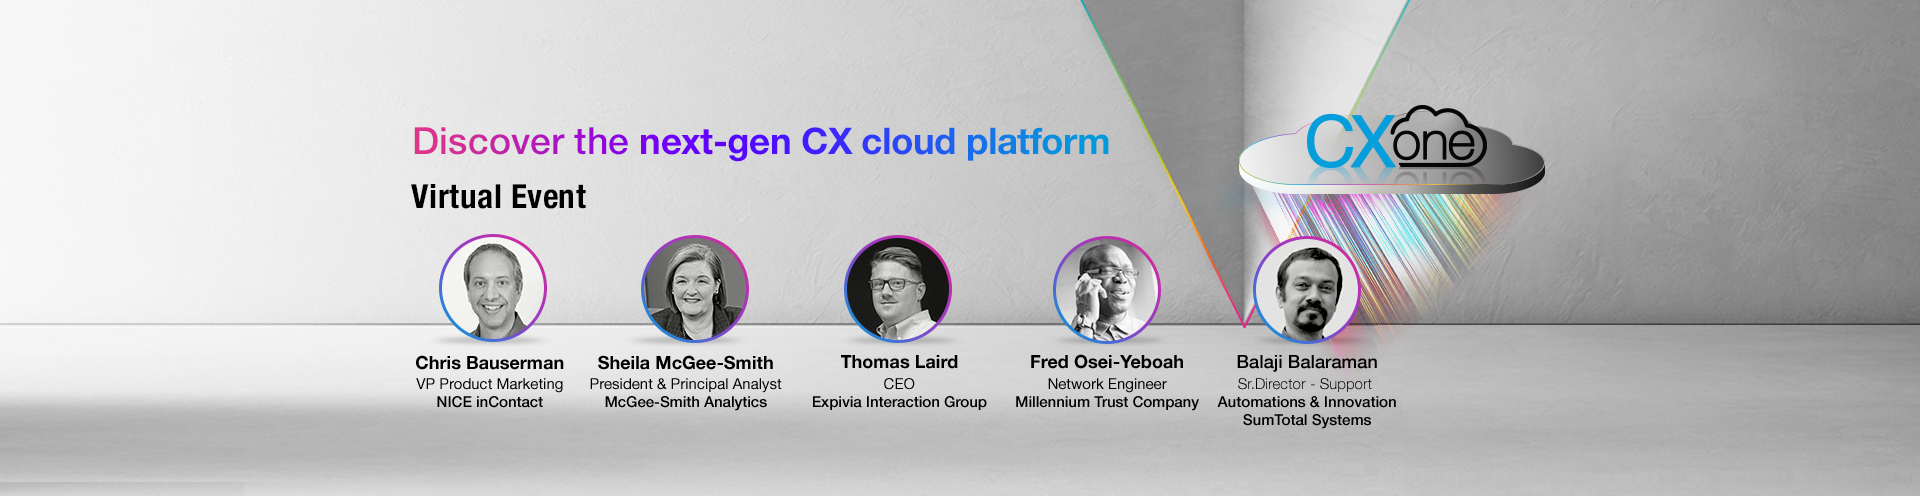 Discover the next-gen CX cloud platform